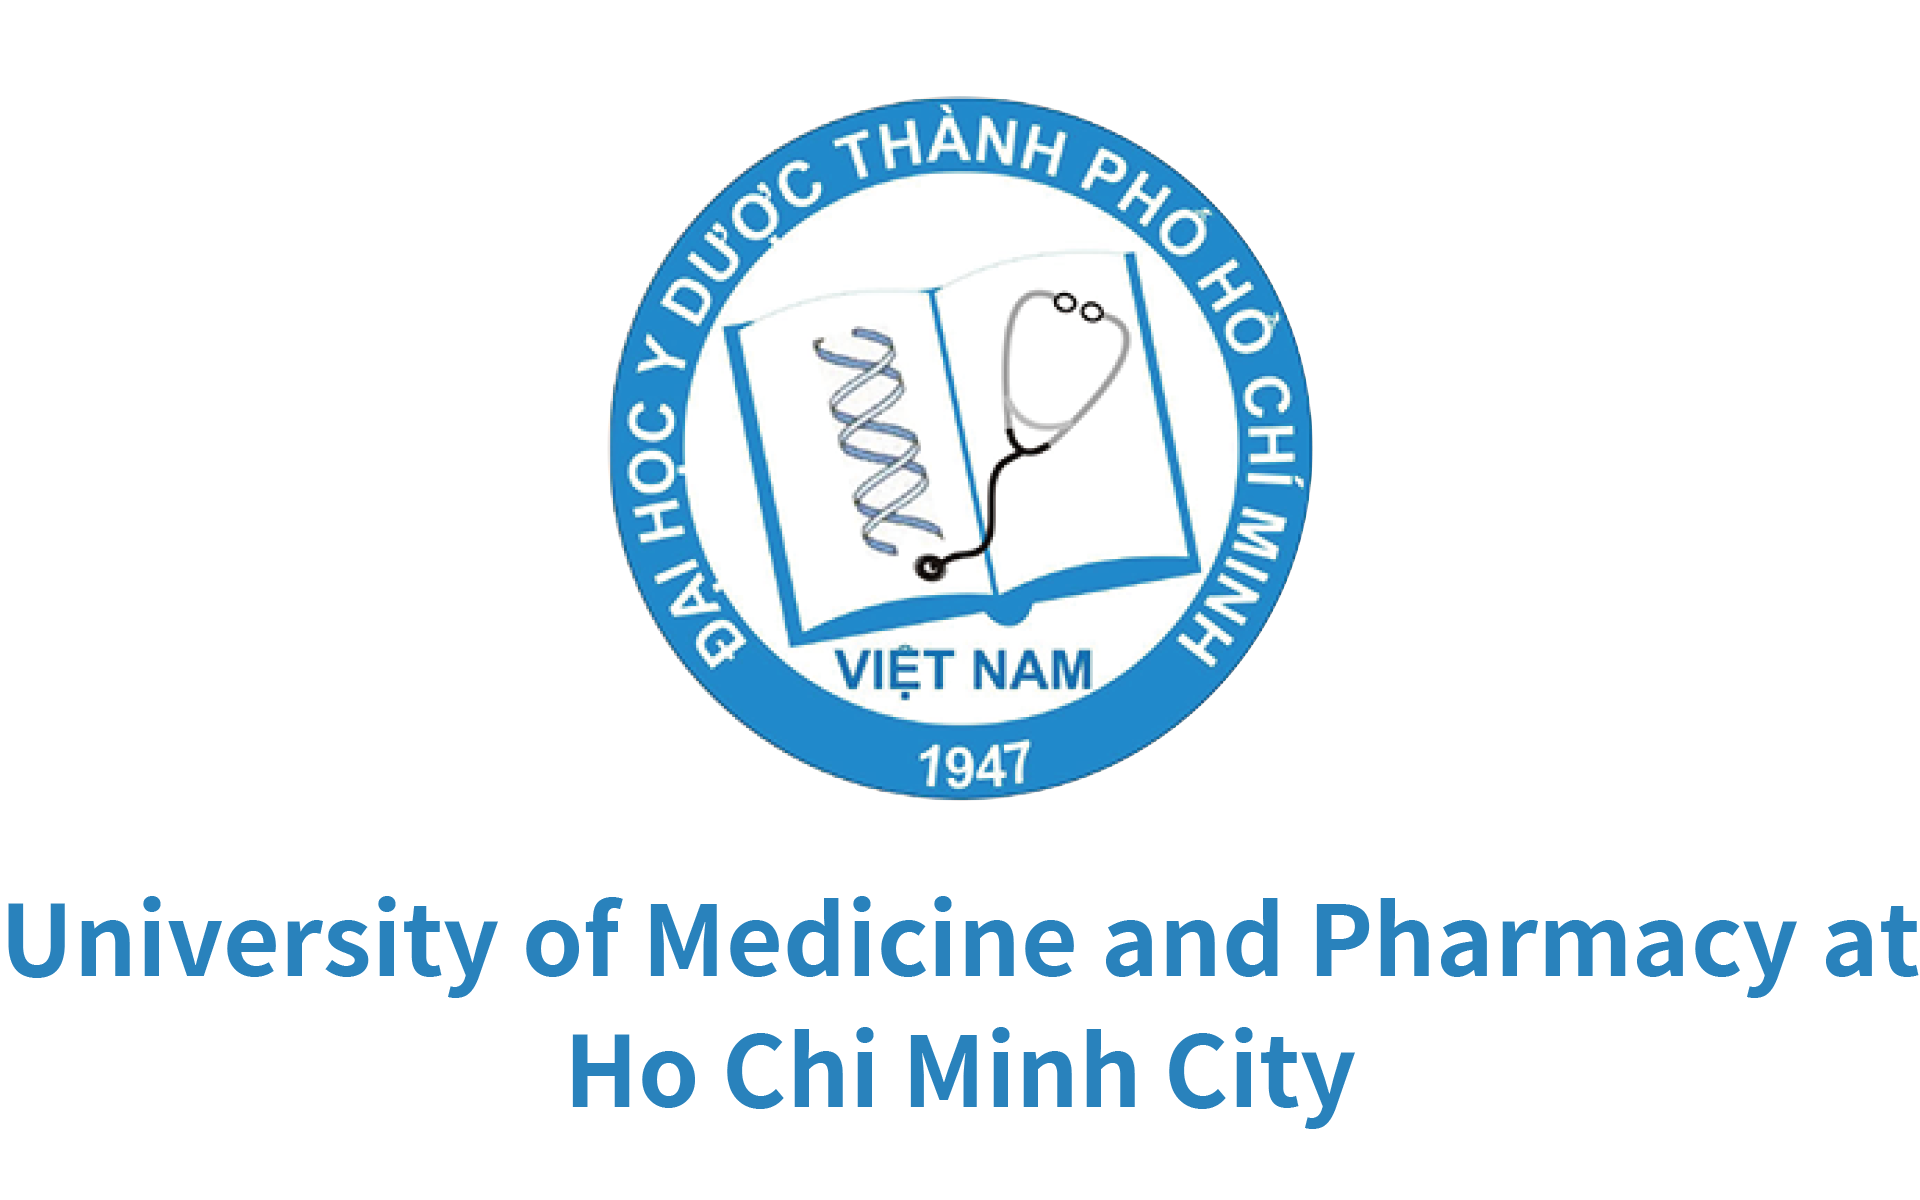 Ho Chi Minh City Medicine and Pharmacy University